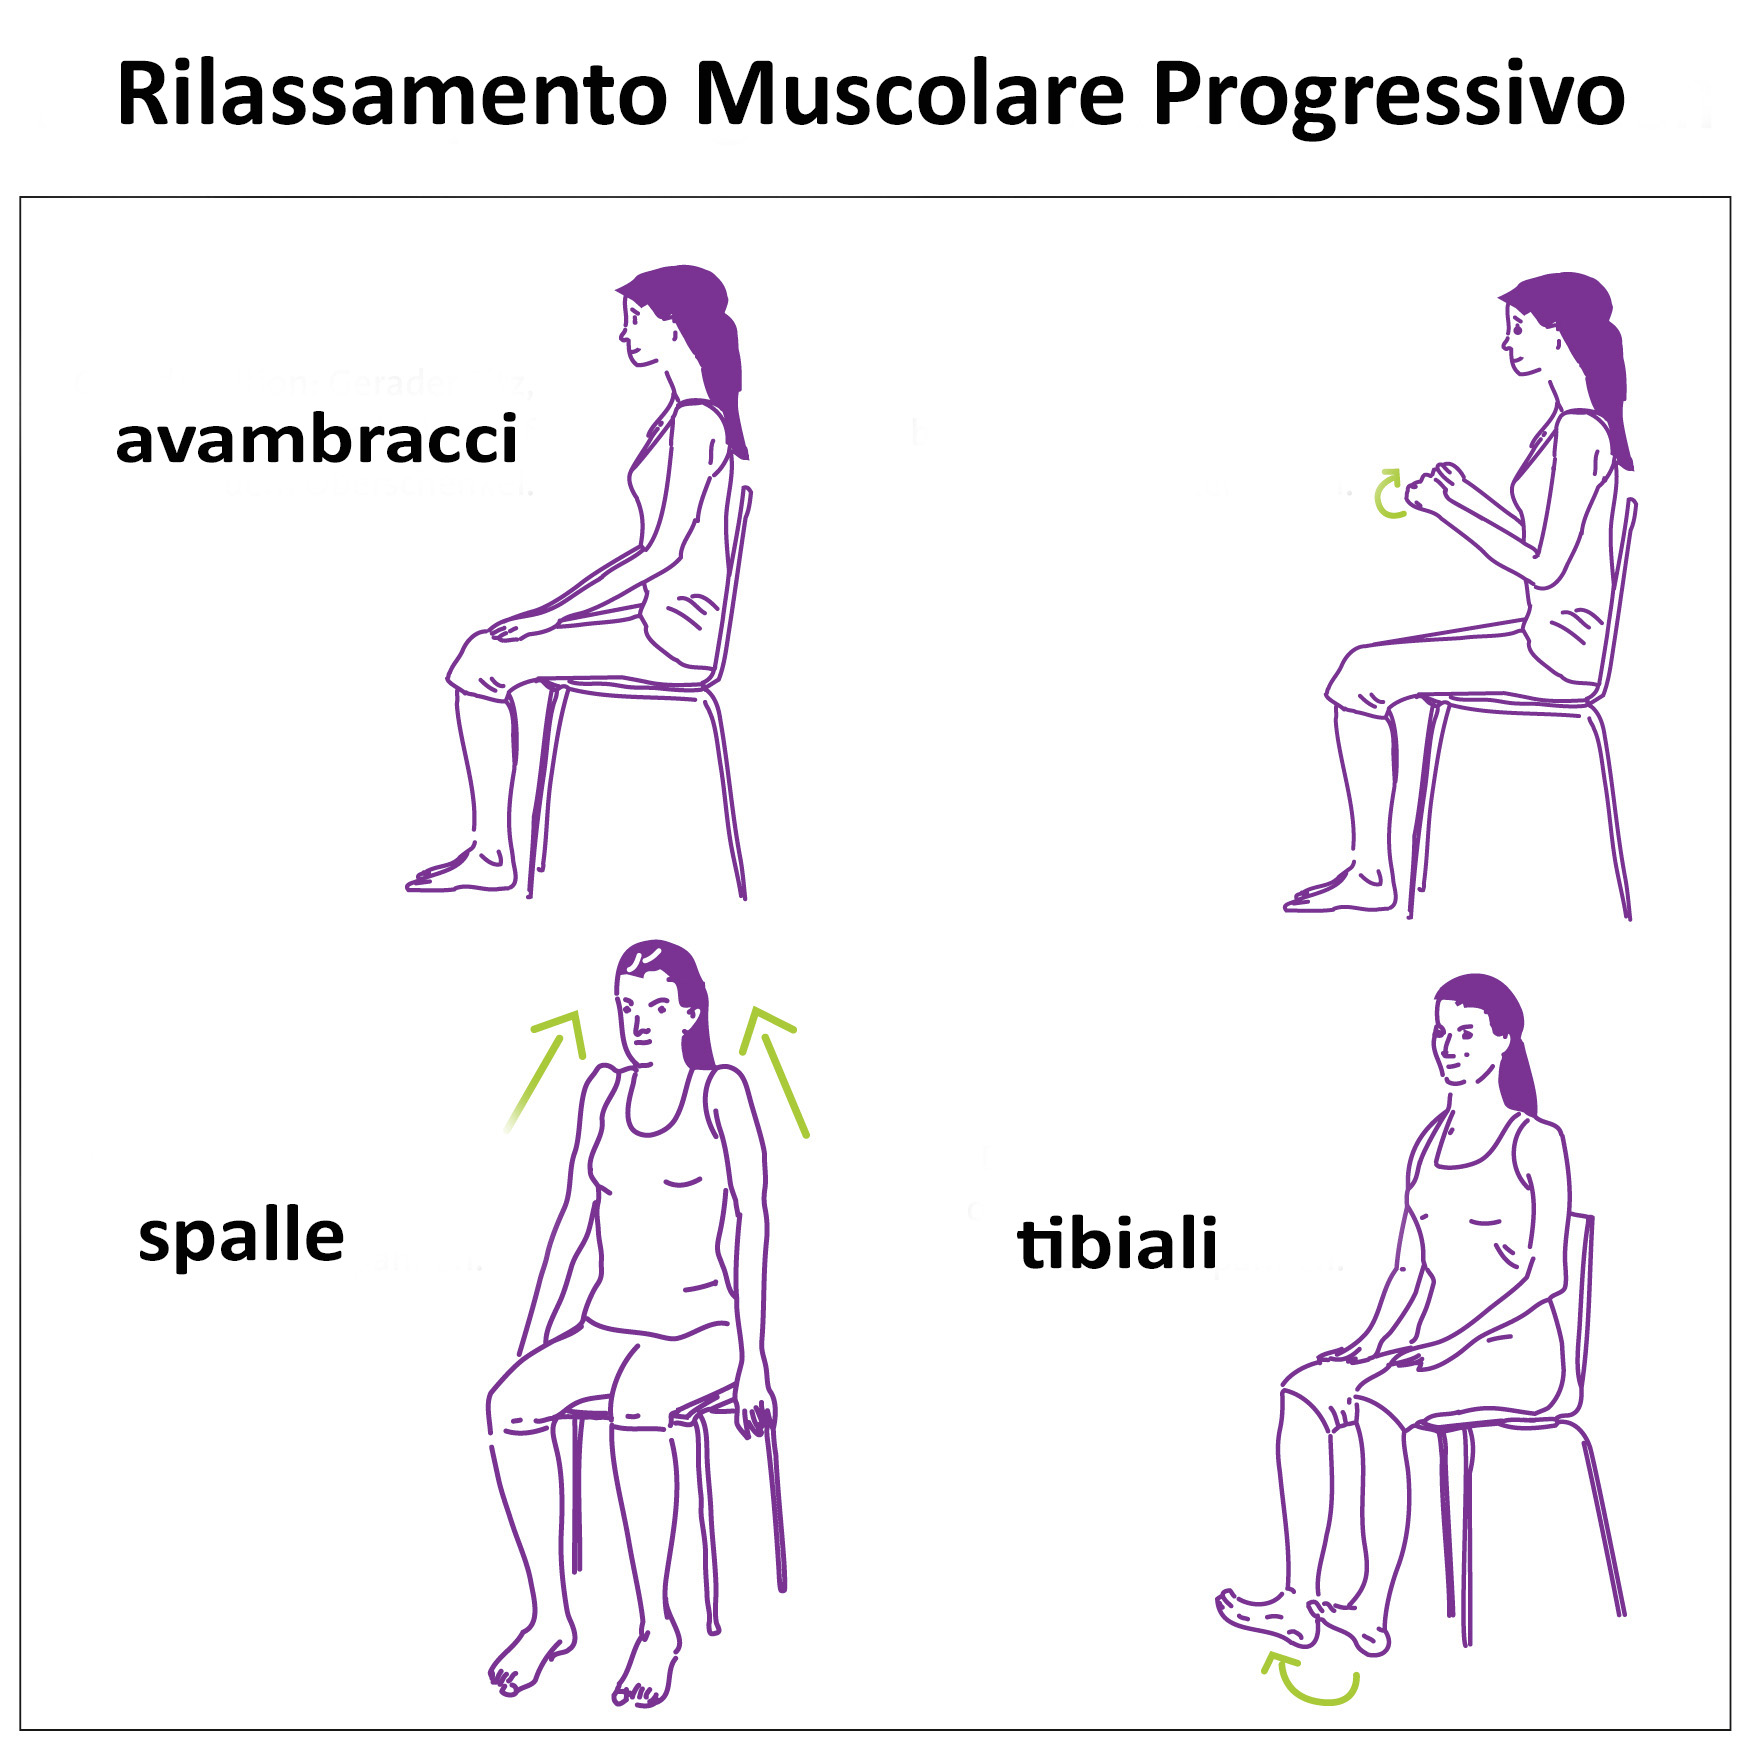 rilassamento-progressivo-muscolare-training-autogeno-